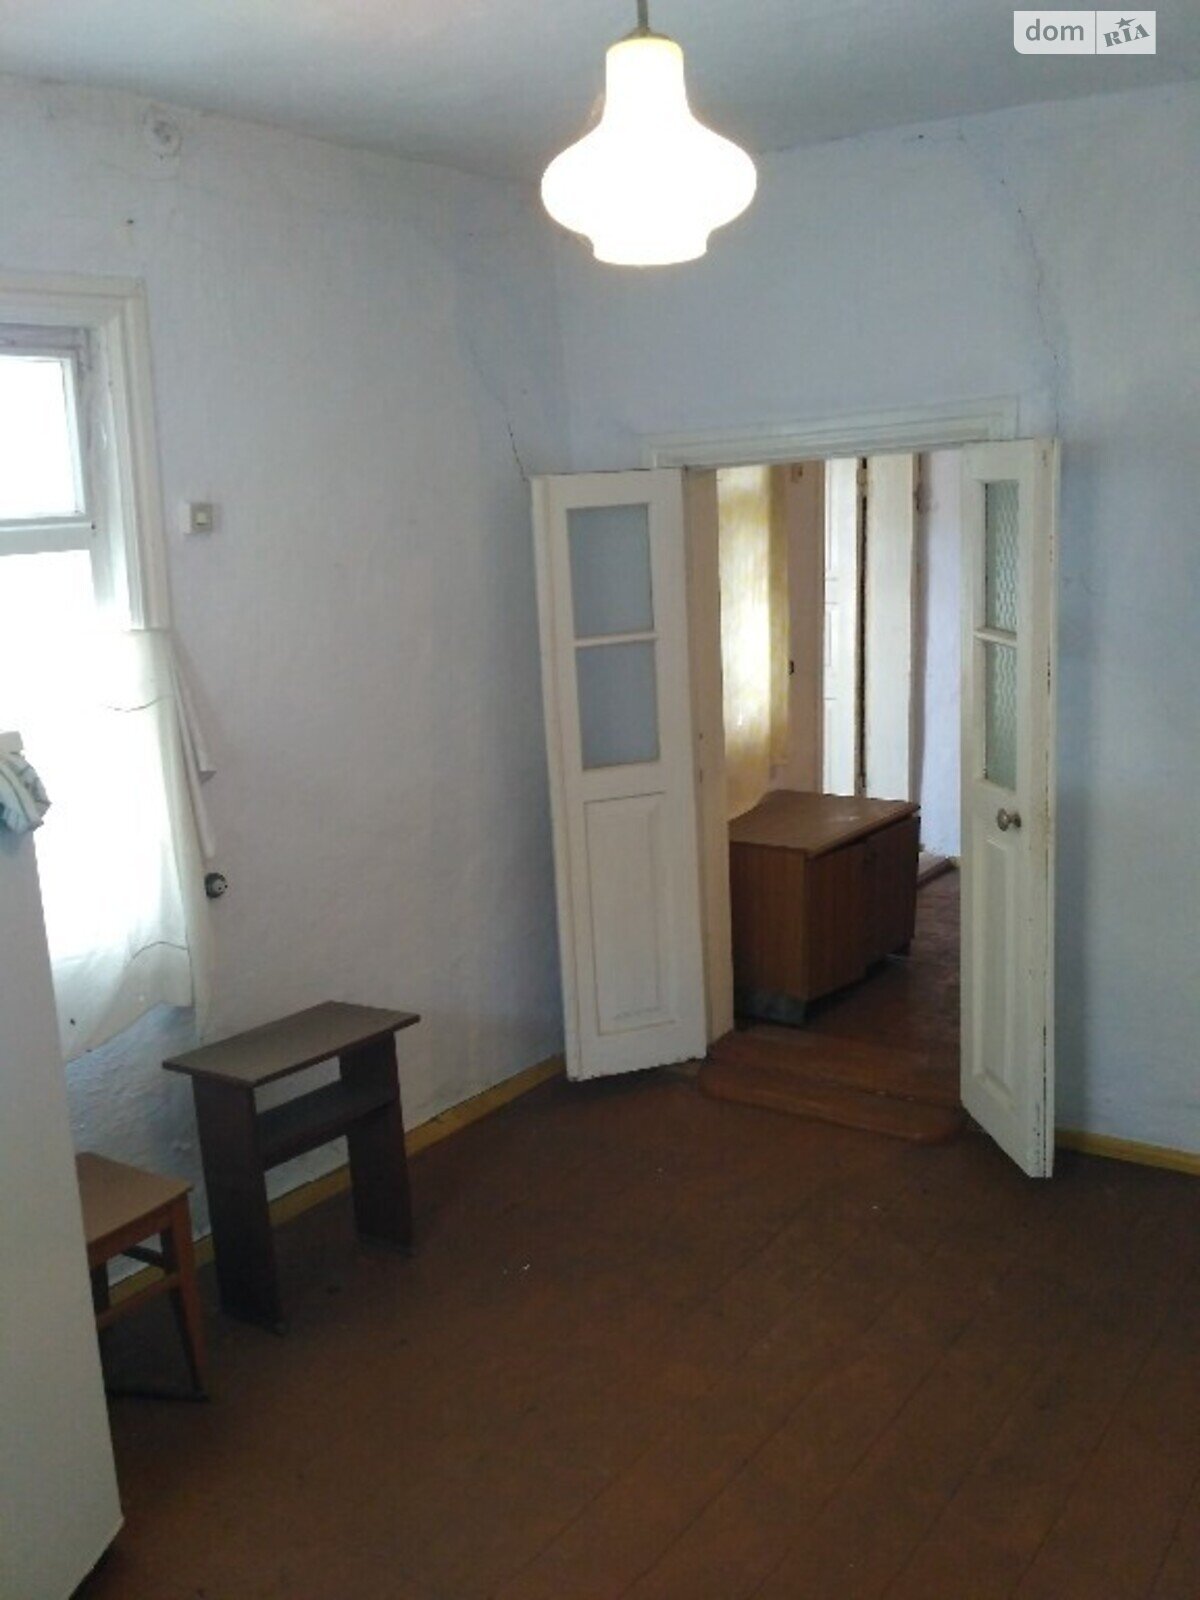 Продажа части дома в Жмеринке, улица Коцюбинского, район Жмеринка, 2 комнаты фото 1